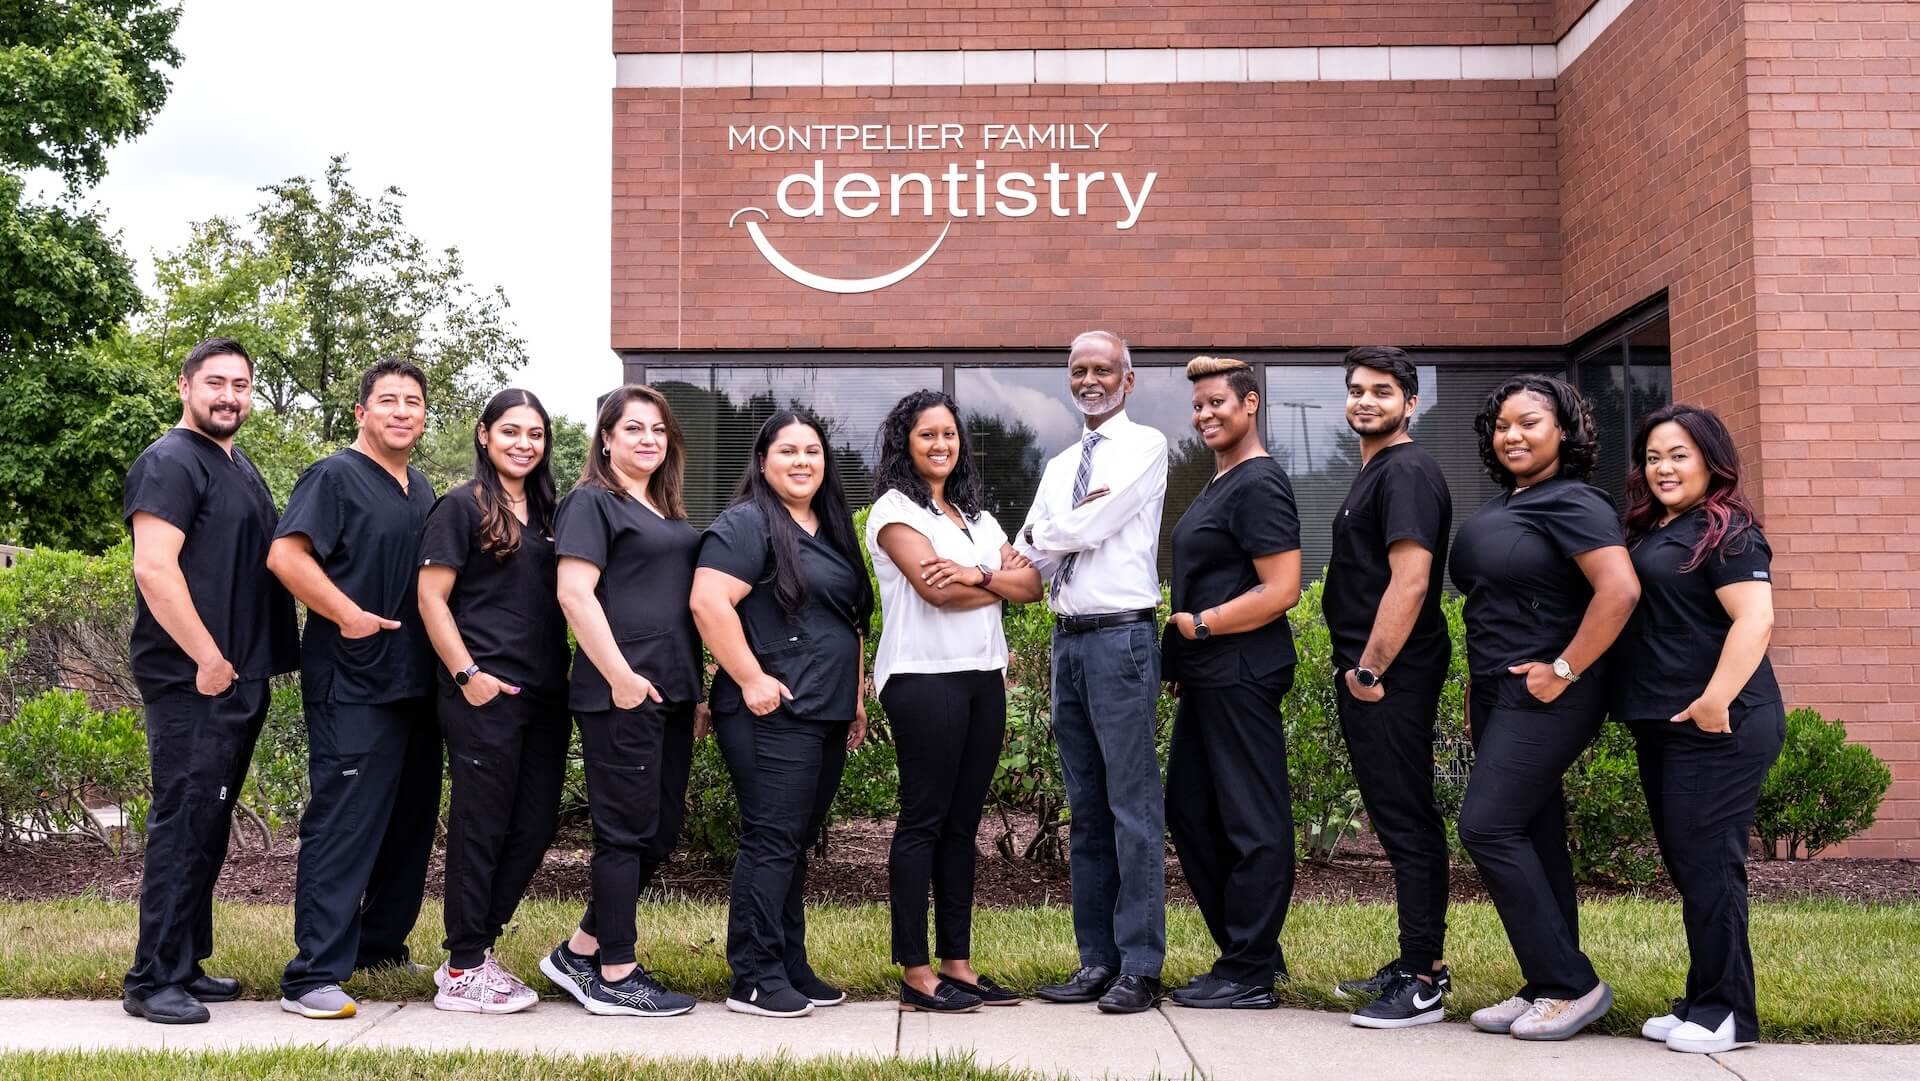 Montpelier Family Dentistry